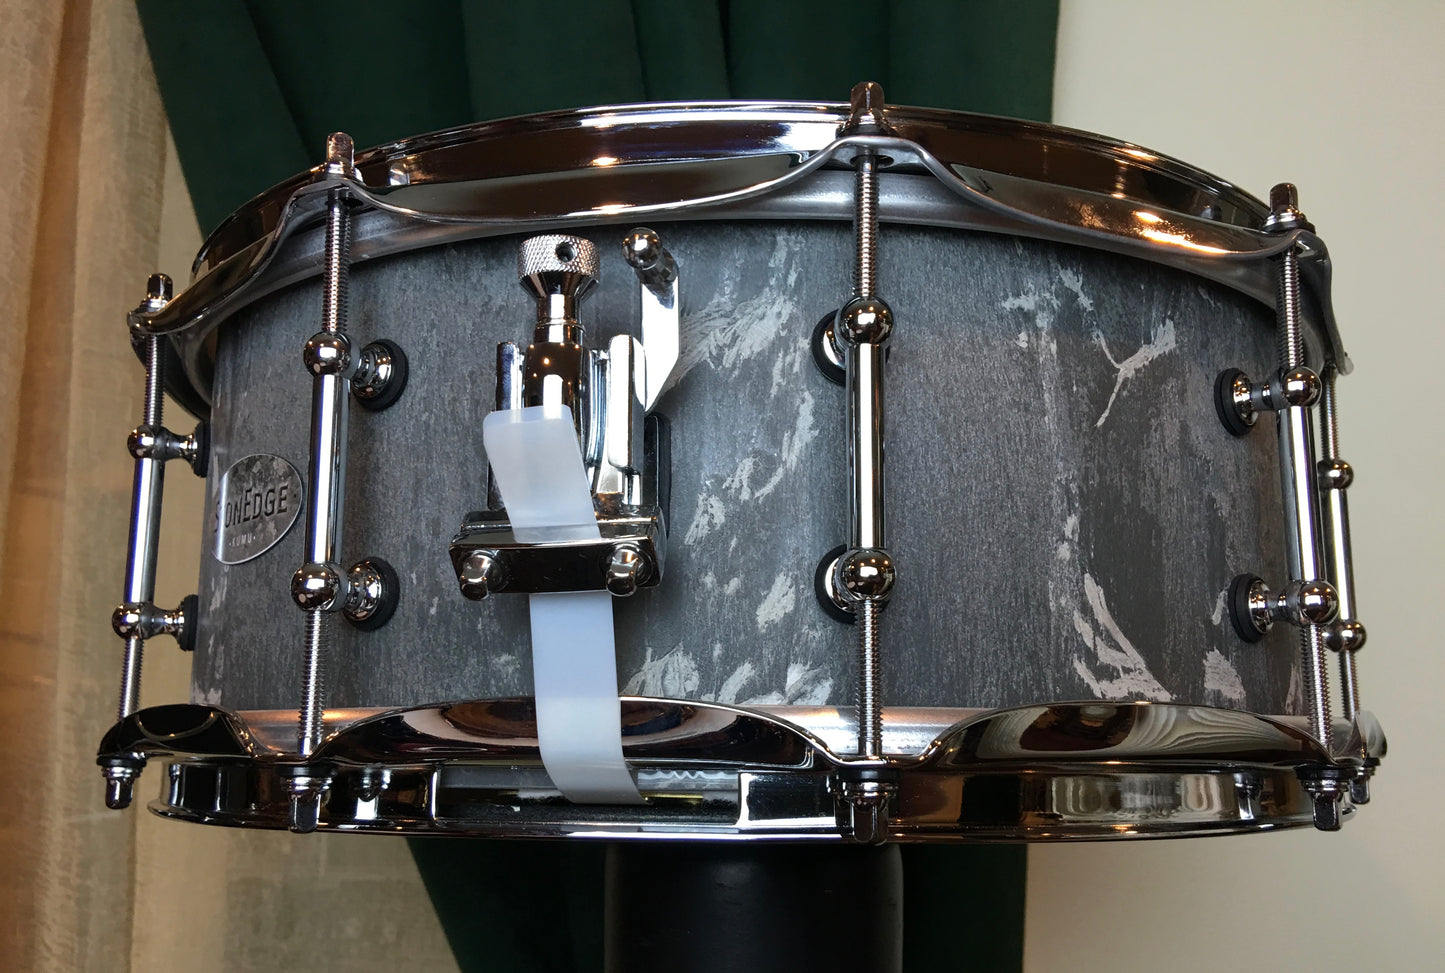 Kumu 5.5"x14" StonEdge Pro 2 Snare Drum from Finland